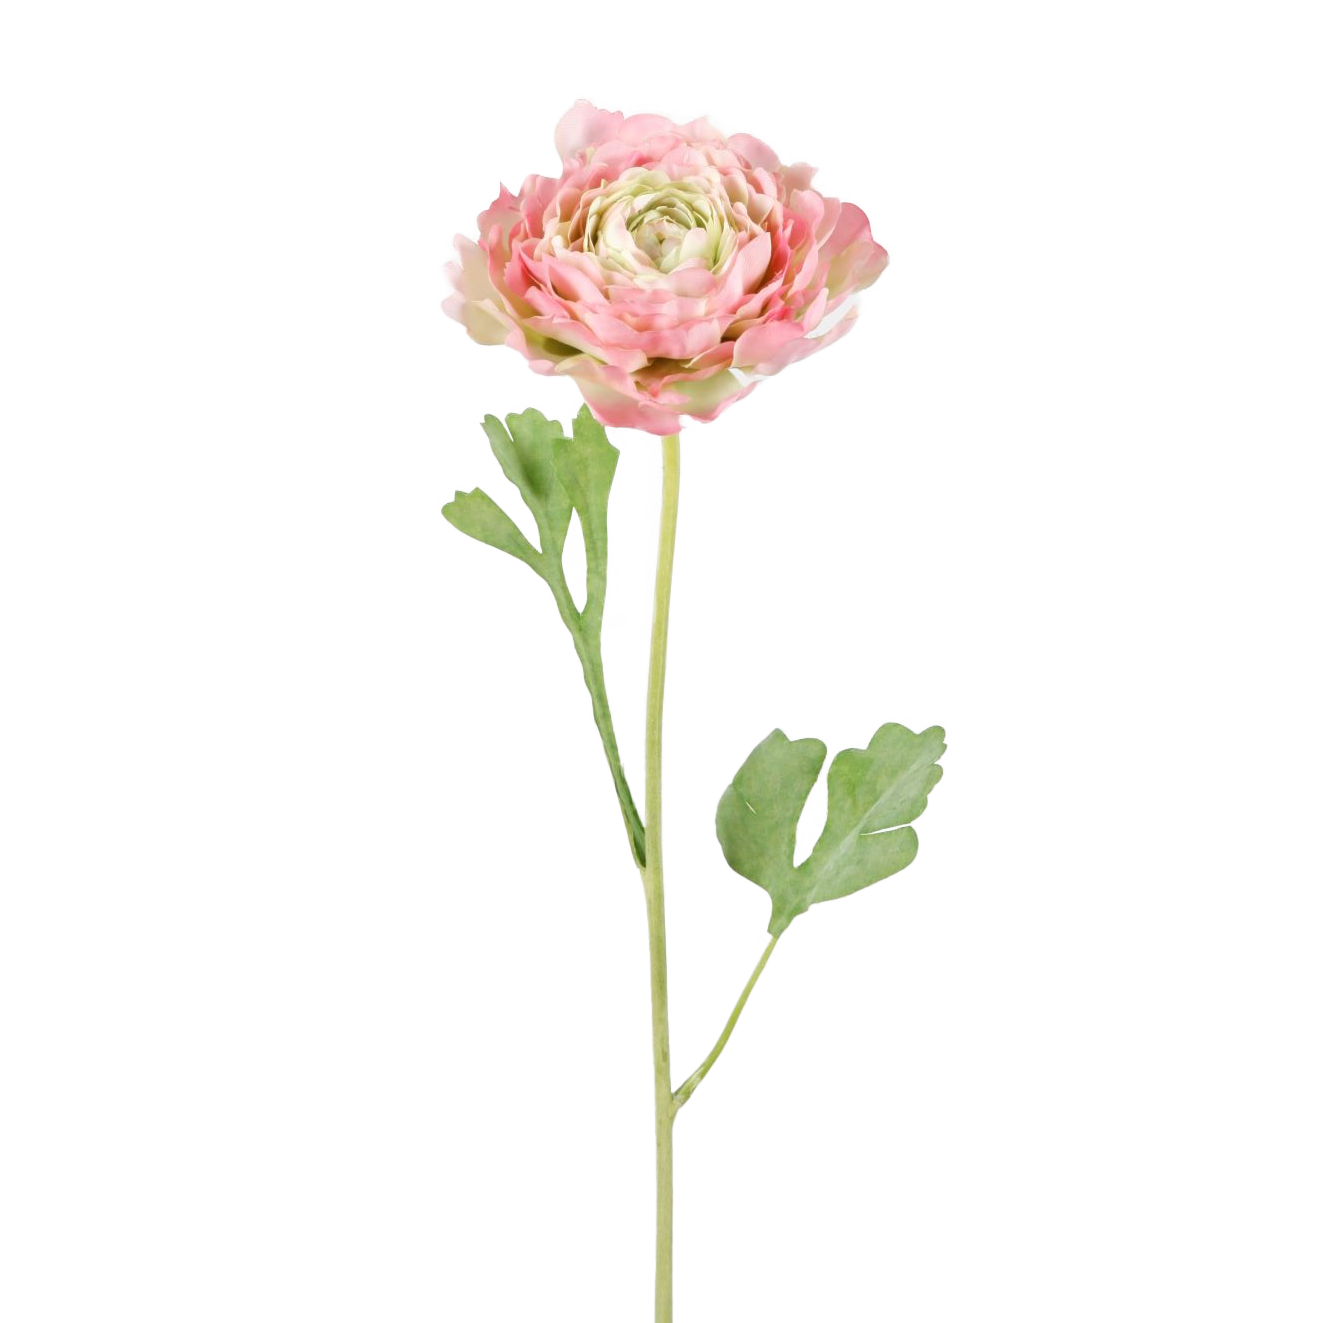 Viv! Home Luxuries Ranonkel - zijden bloem - groen roze - 56cm